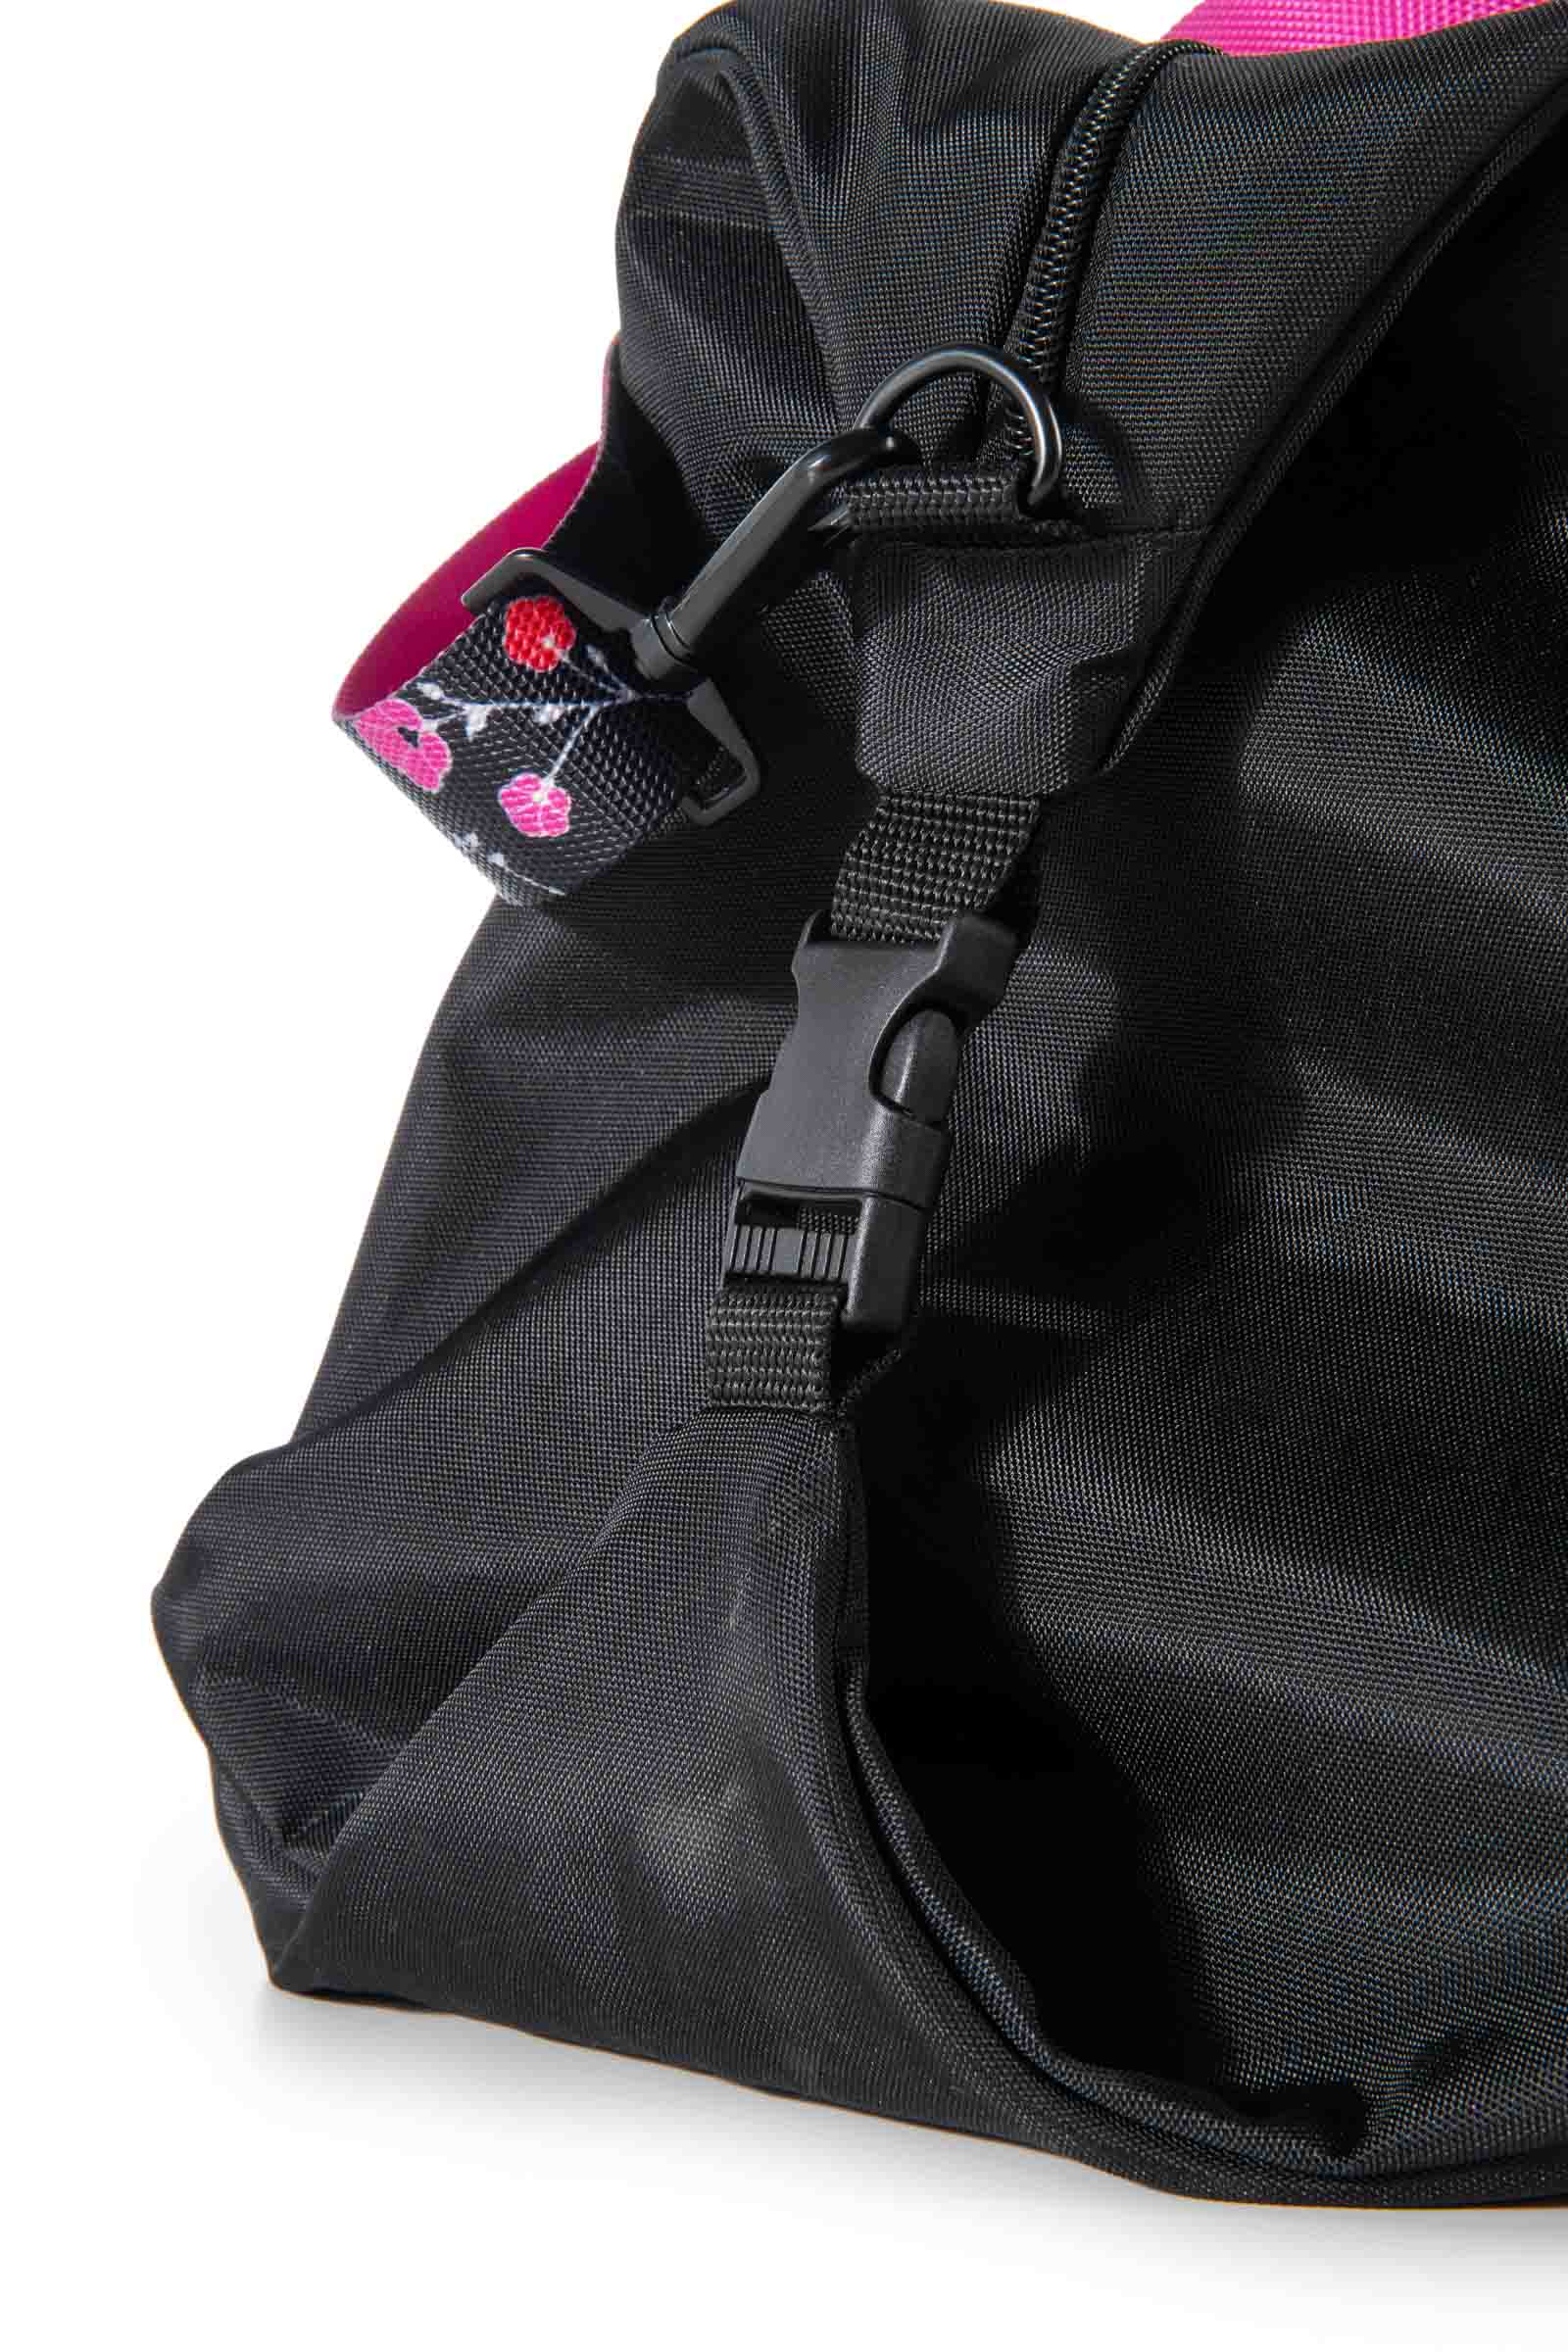 LADY MARY BAG PRINCE BY HYDROGEN - BLACK,FUCHSIA FLUO - Abbigliamento sportivo | Hydrogen